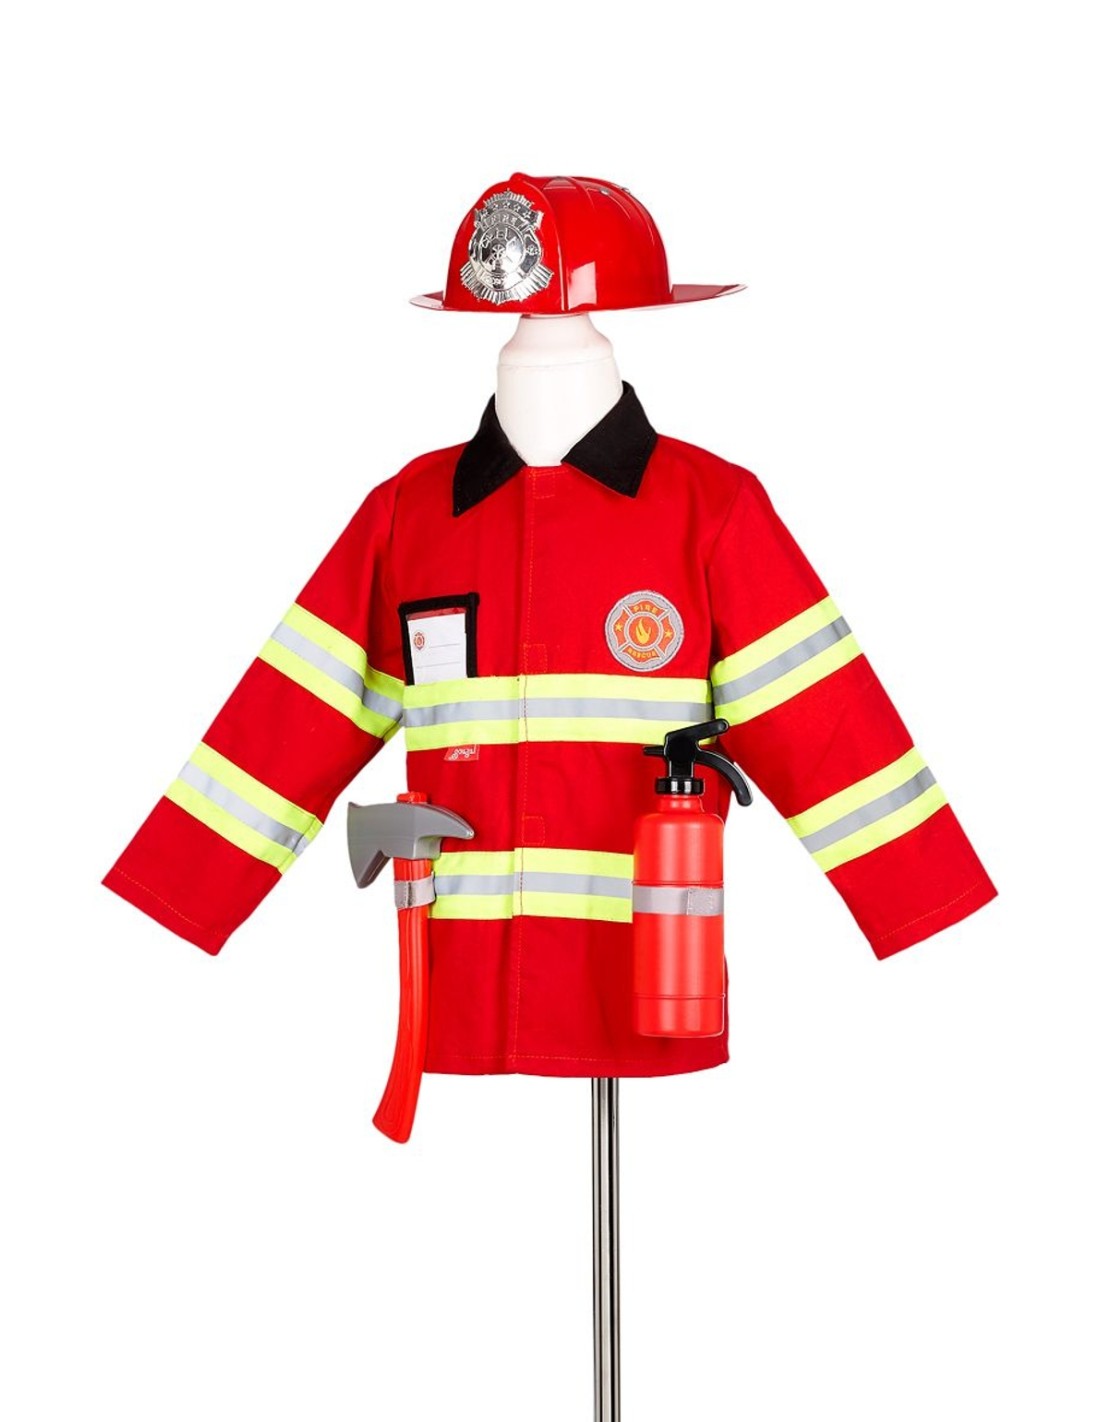 Manualidades - Como hacer un sombrero de bombero con un